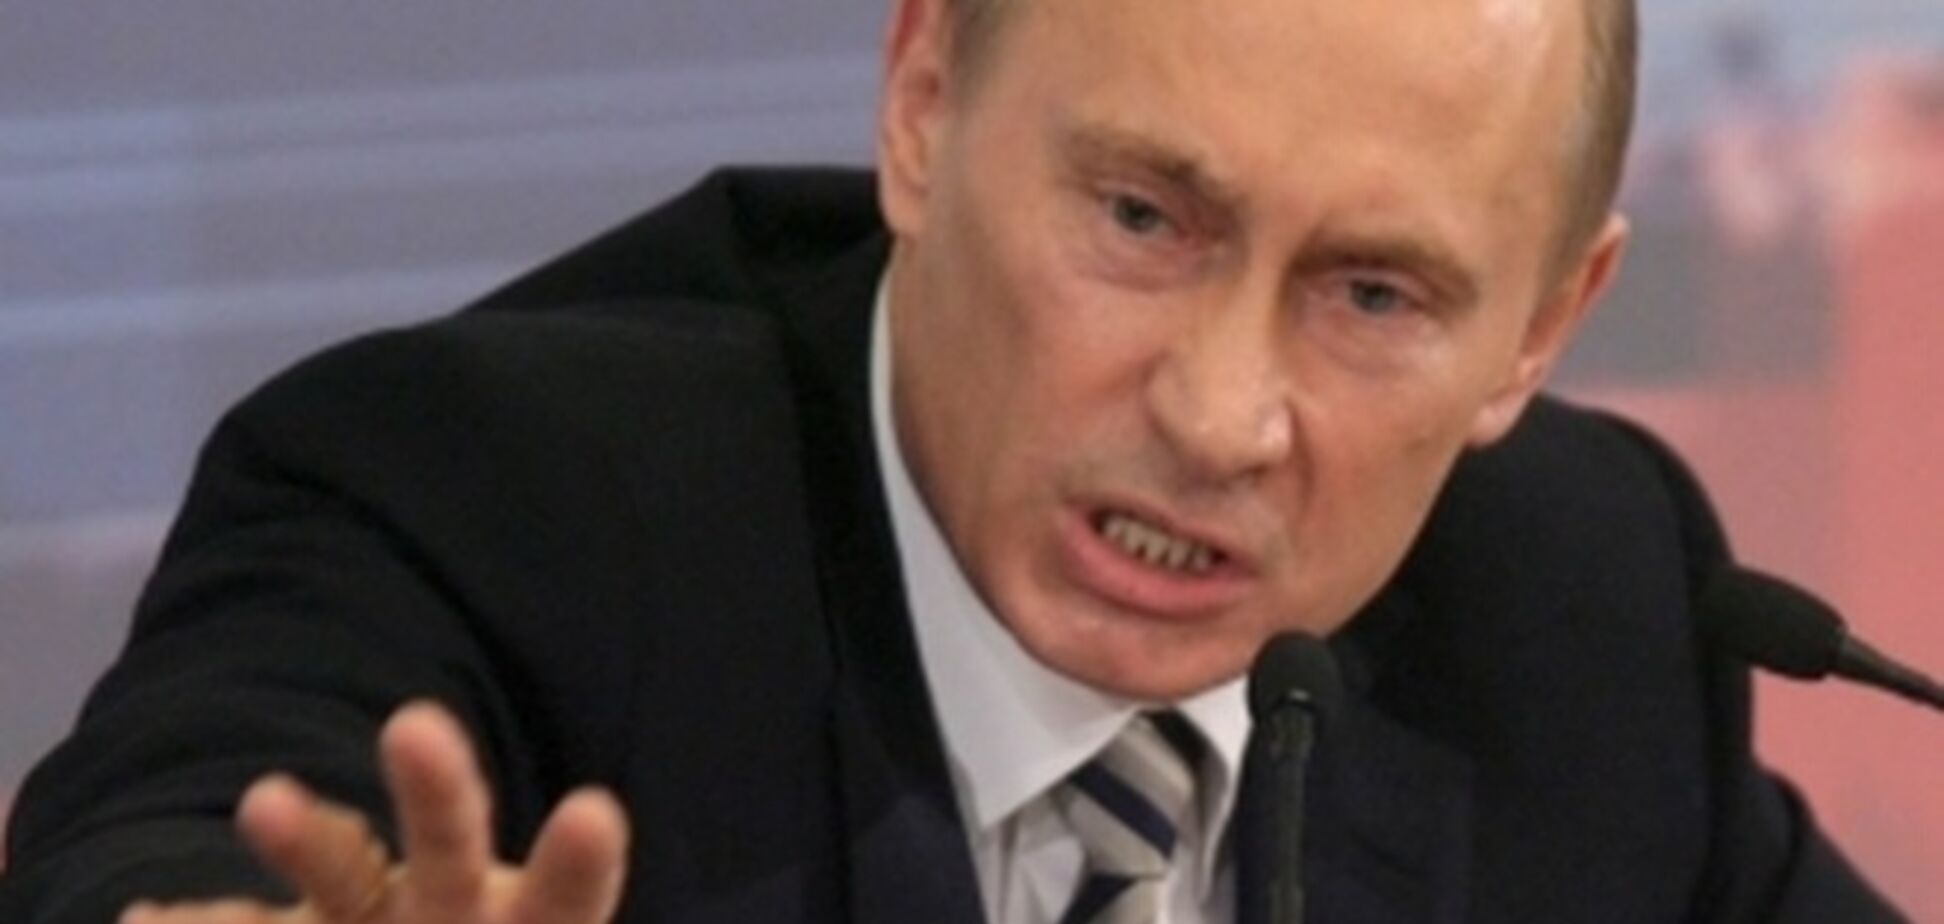 Путин чувствует себя 'медведем', который должен первым кидаться на людей - эксперт